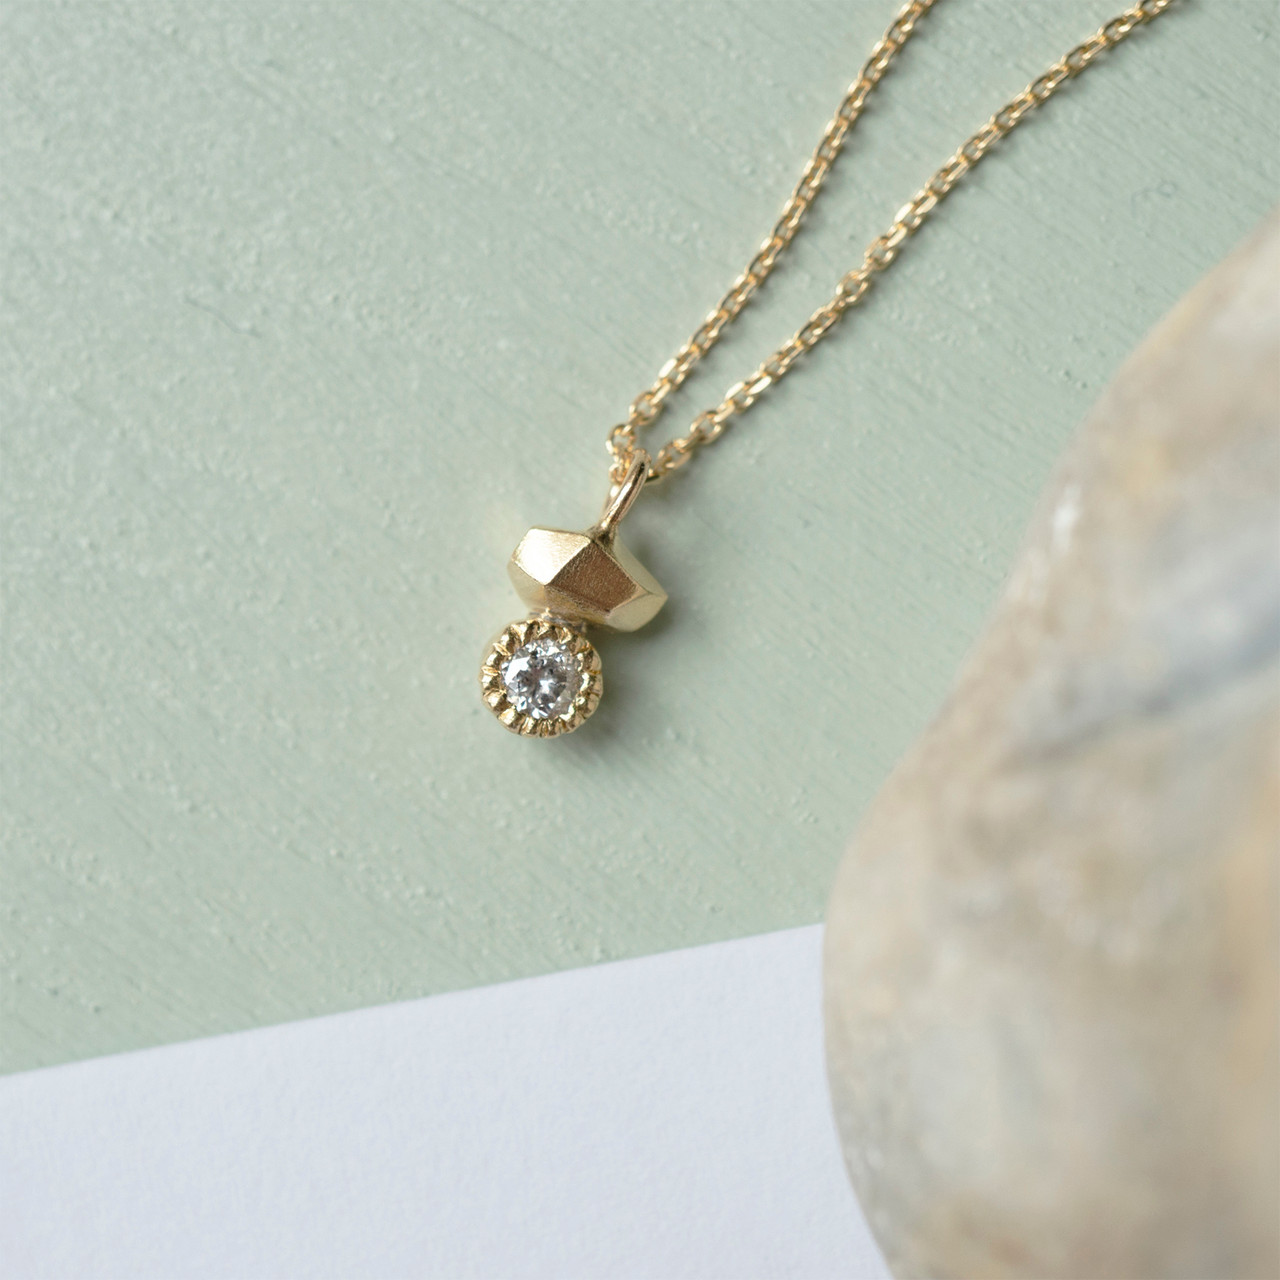 Gea Duo Mini Necklace with Salt & Pepper Diamond, Maria Manola, tomfoolery